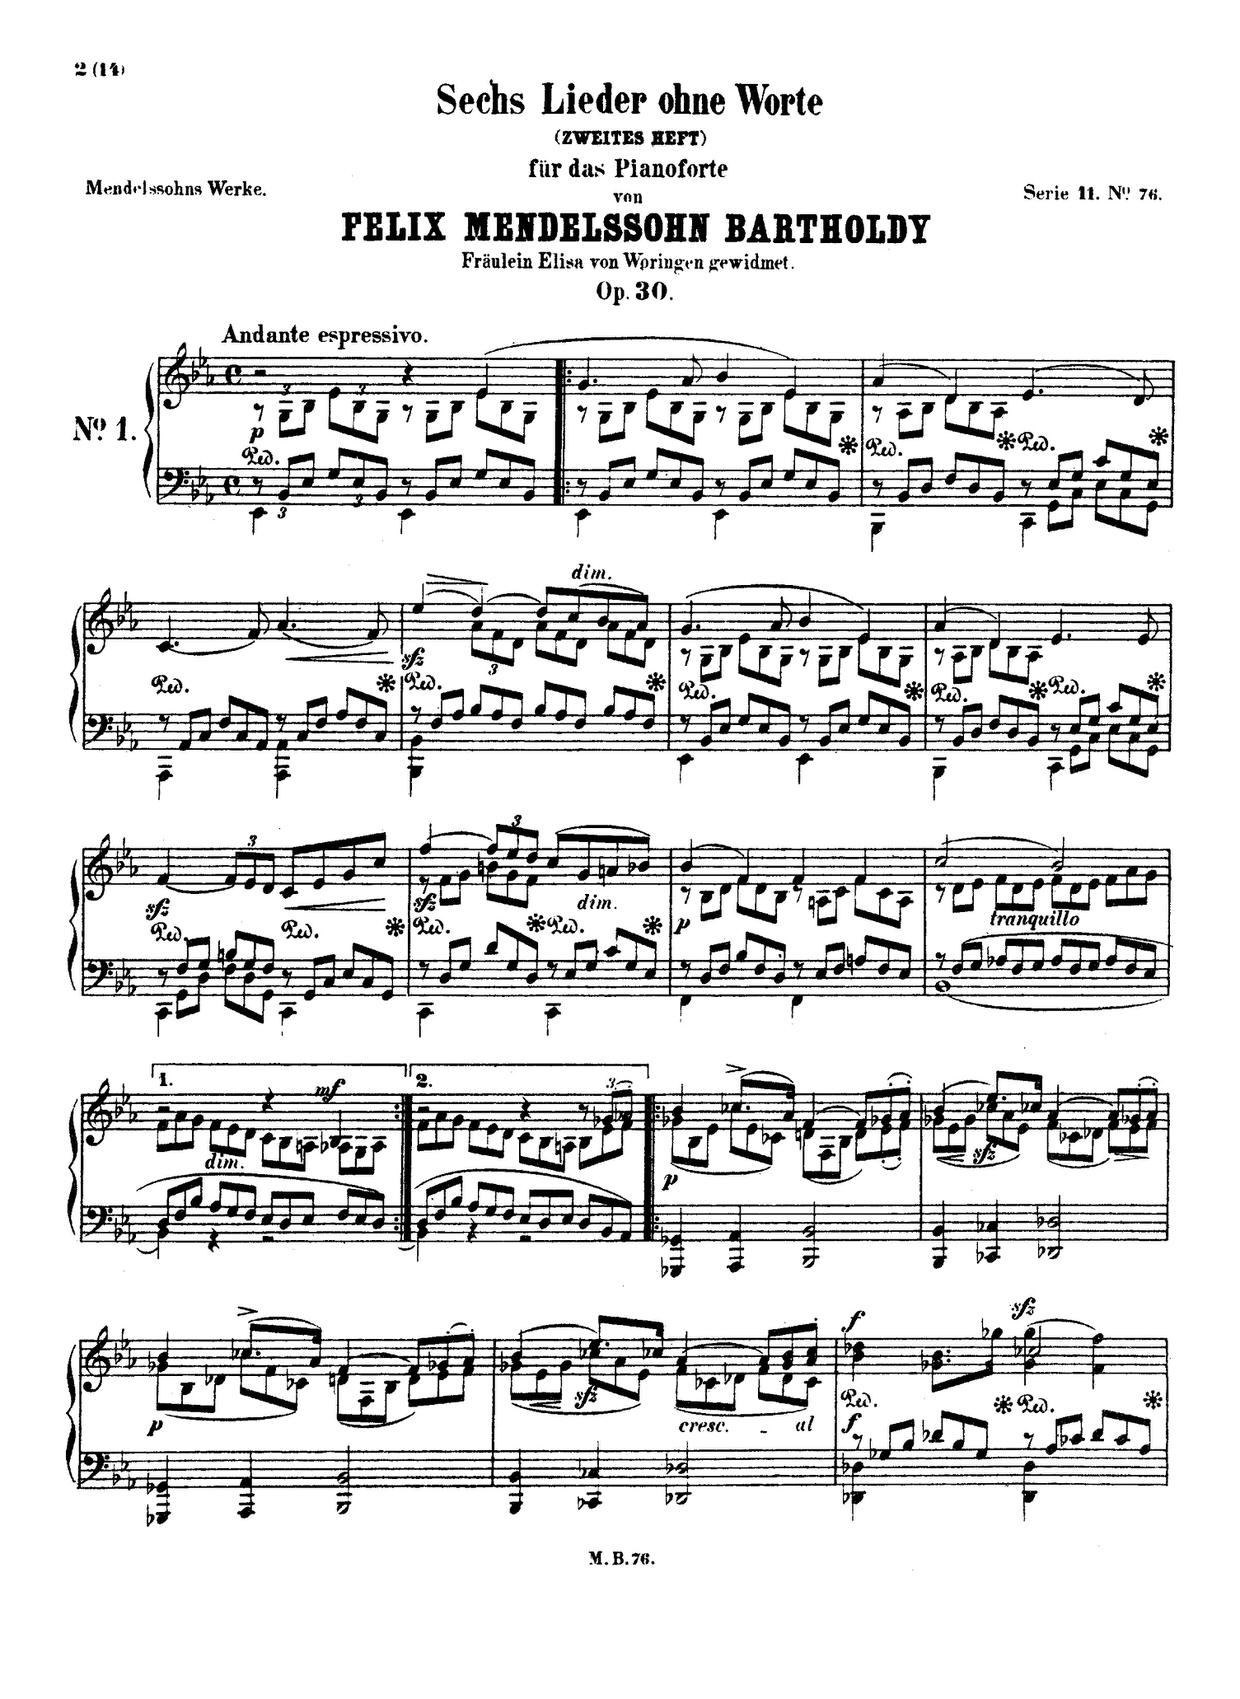 Lieder ohne Worte, Book 2, Op. 30 (Excerpts): No. 6 in F-Sharp Minor, MWV U 110 "Venetianischesピアノ譜